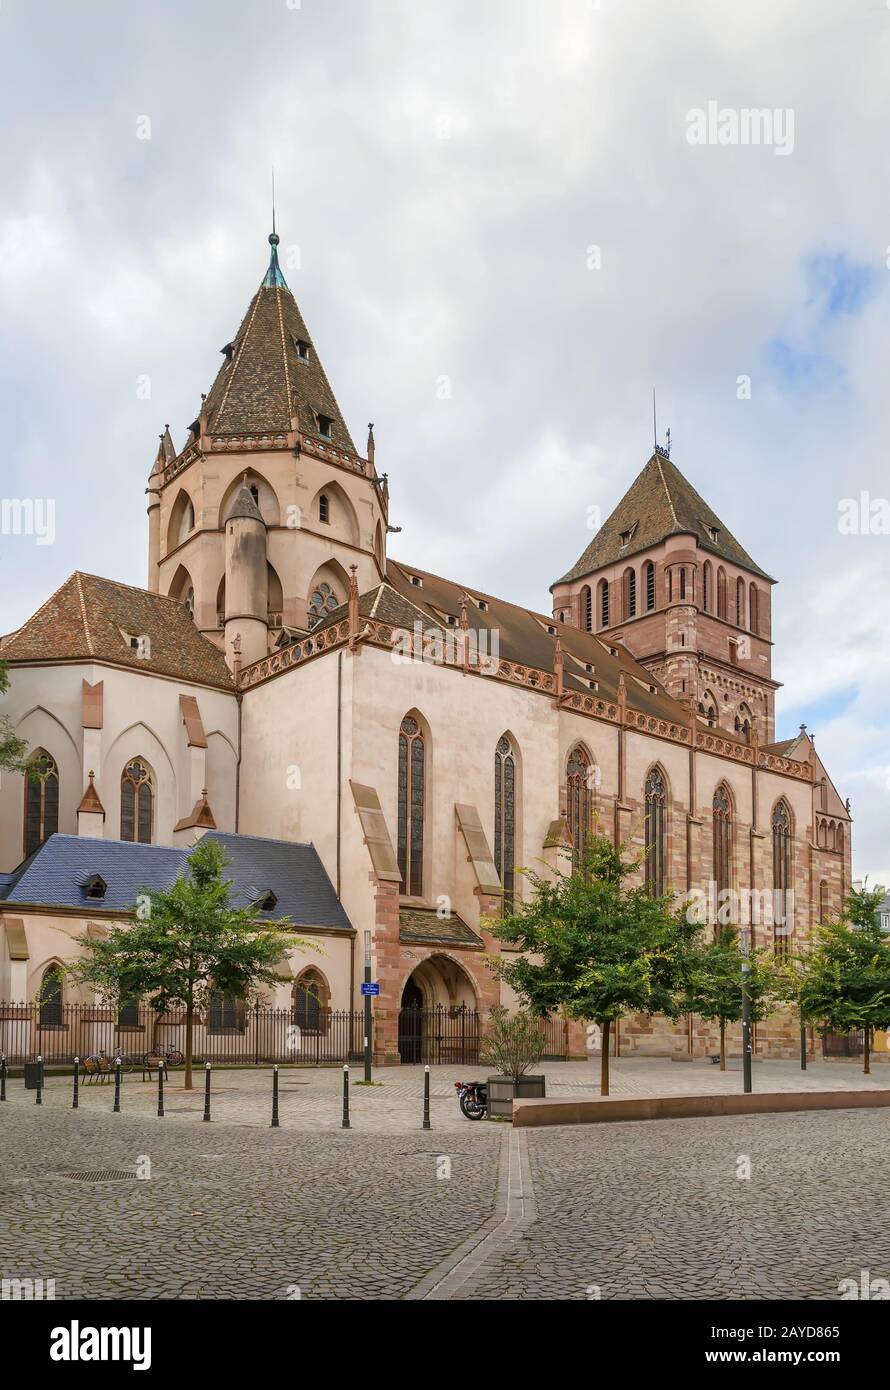 St. Thomas church, Strasbourg Stock Photo